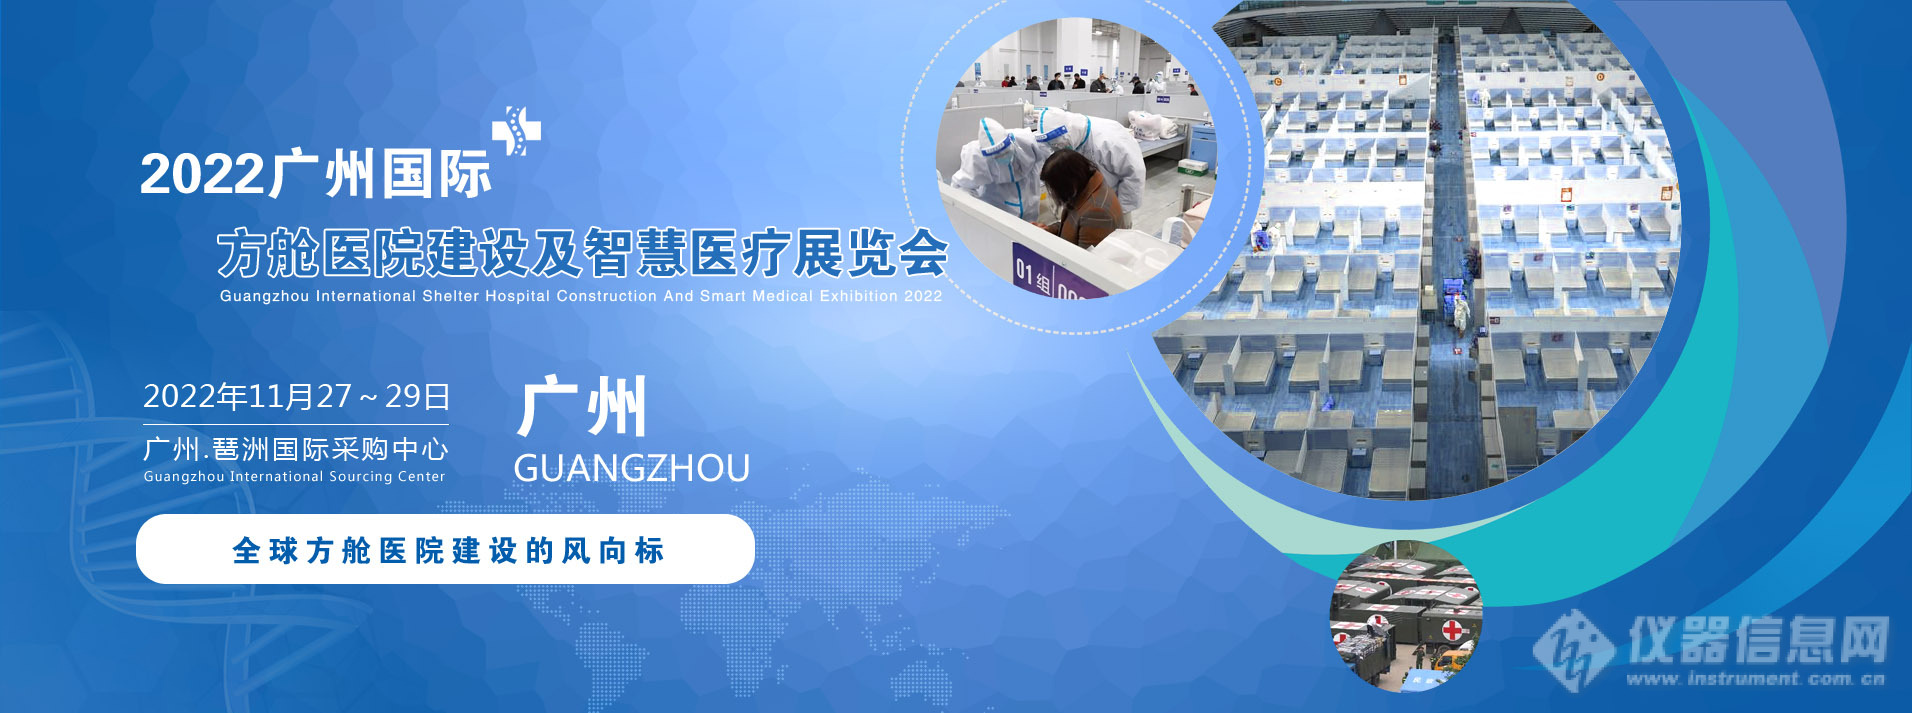 2022广州国际方舱医院建设及智慧医疗展览会.jpg